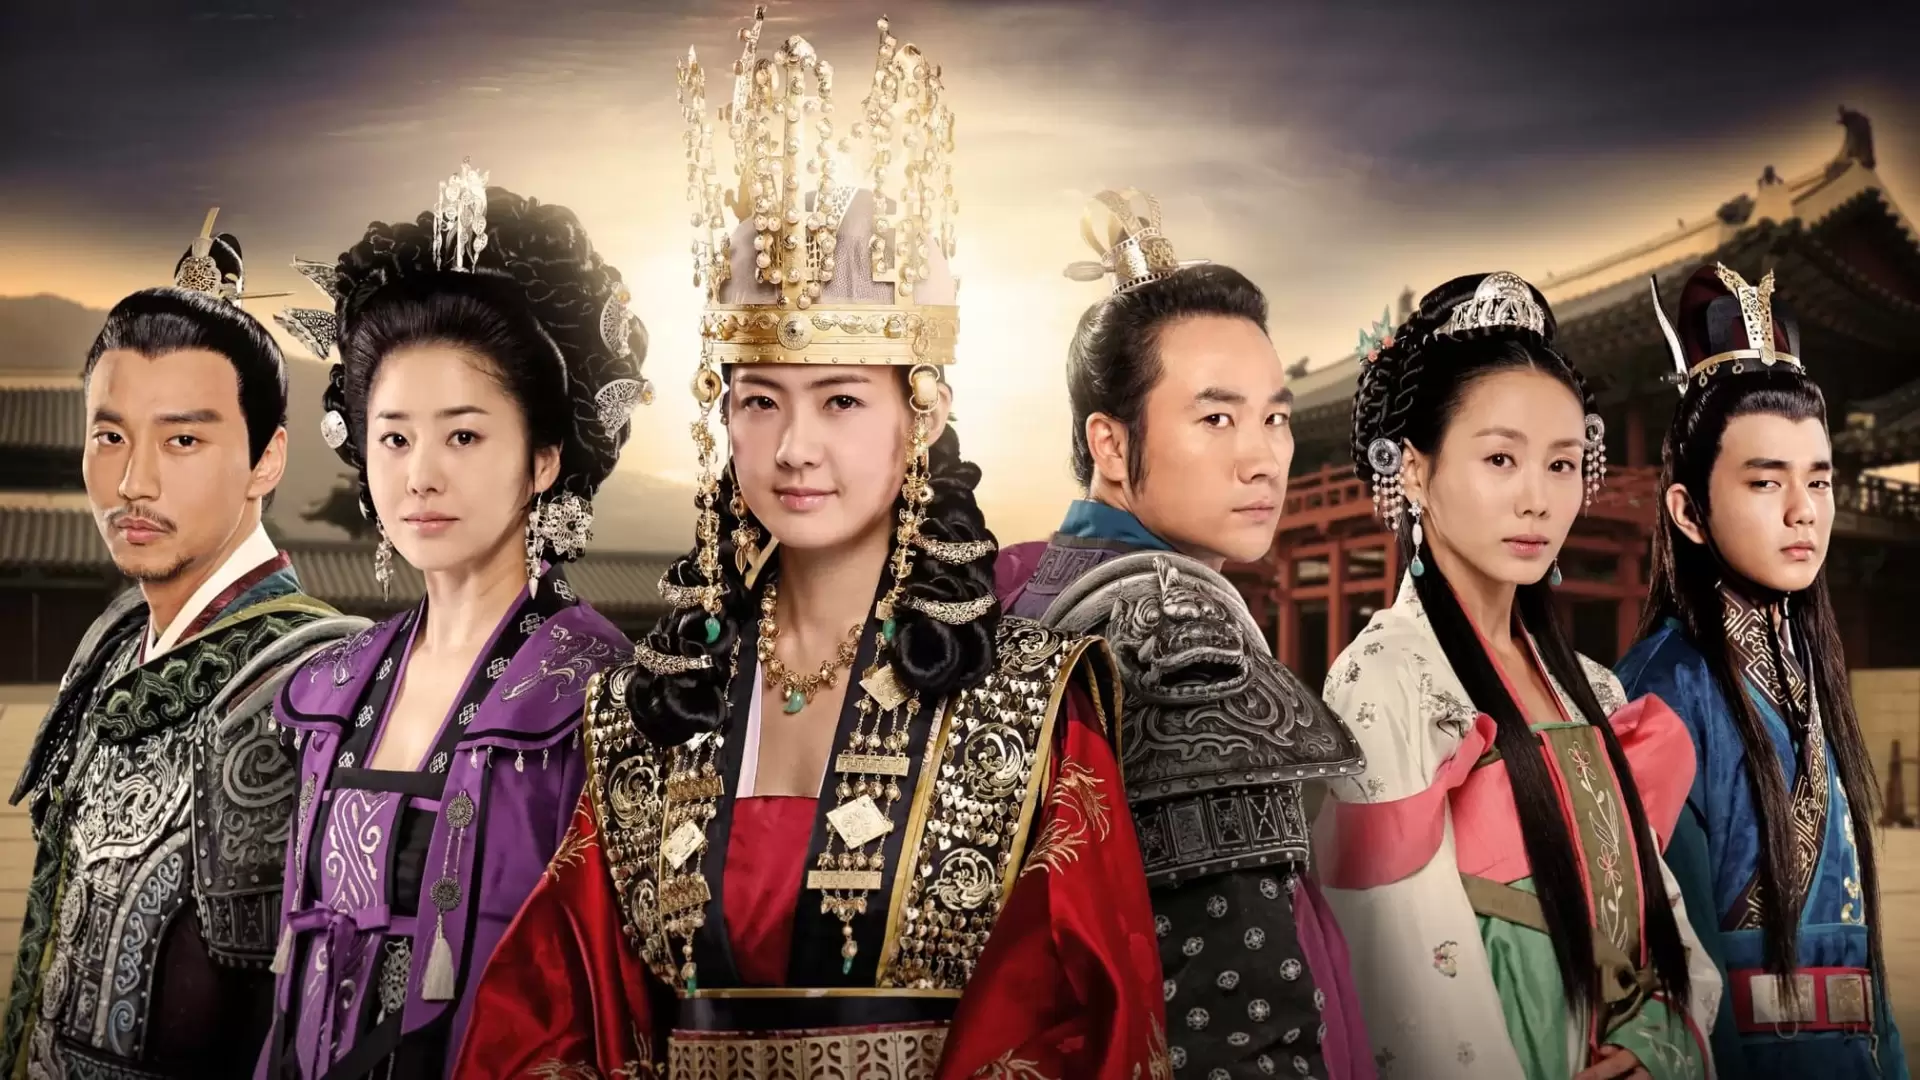 دانلود سریال The Great Queen Seondeok 2009 (ملکه بزرگ سئوندوک) با زیرنویس فارسی و تماشای آنلاین